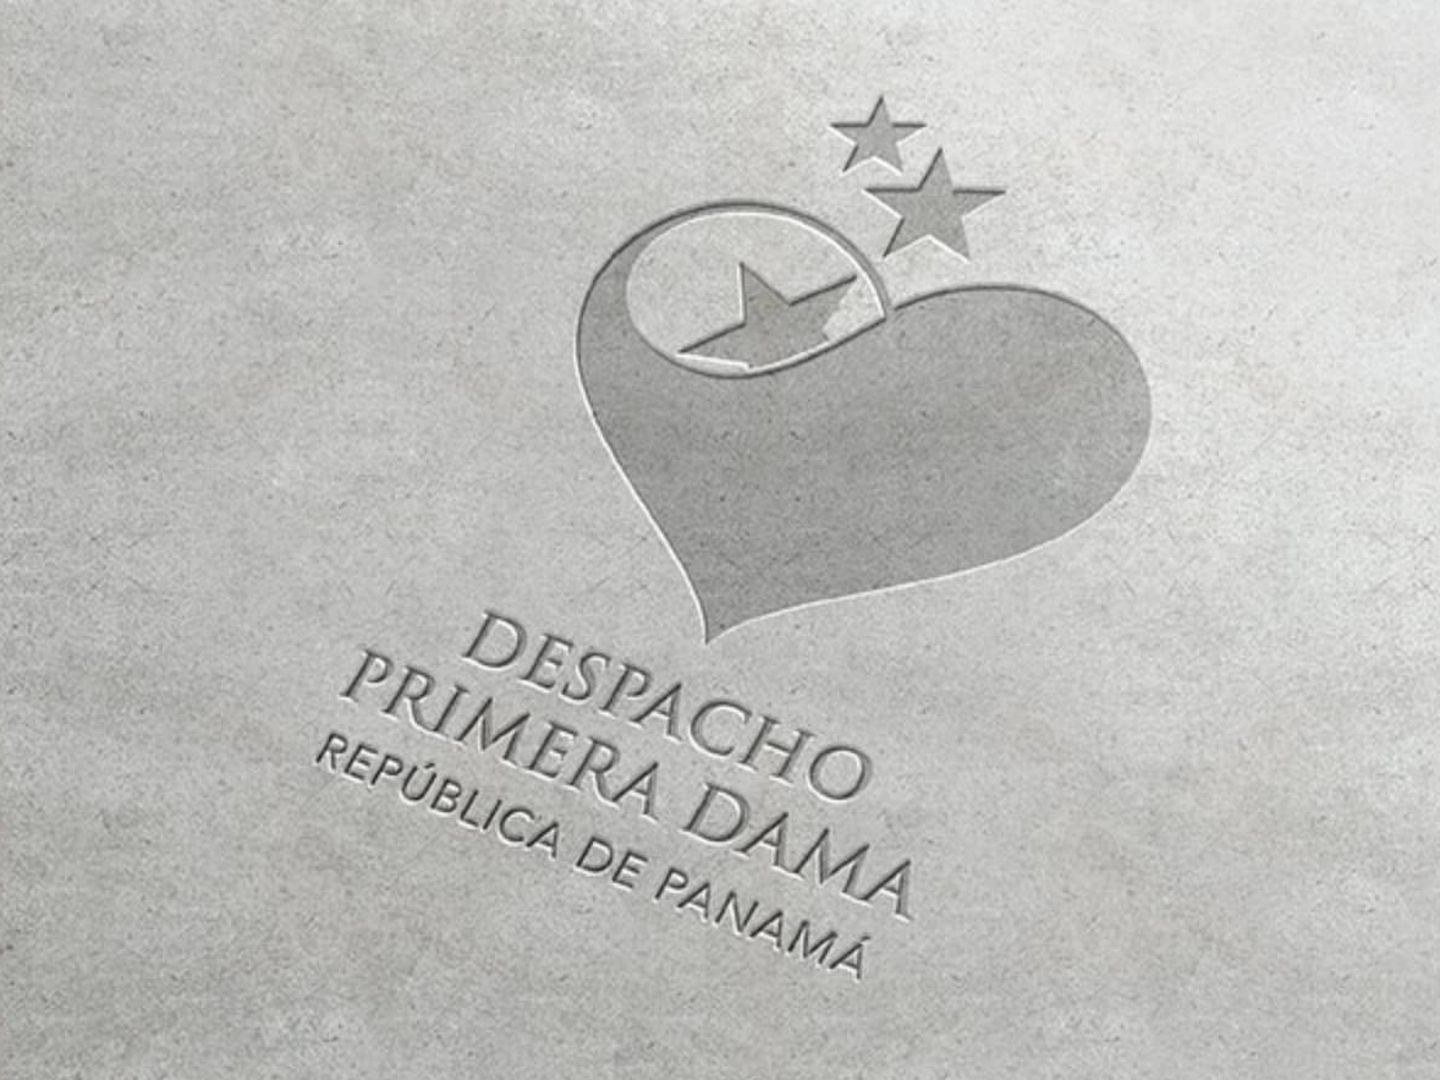 Sello de la identidad gráfica de la primera dama de Panamá creado por Pepe Canya. (Ají by Canya)